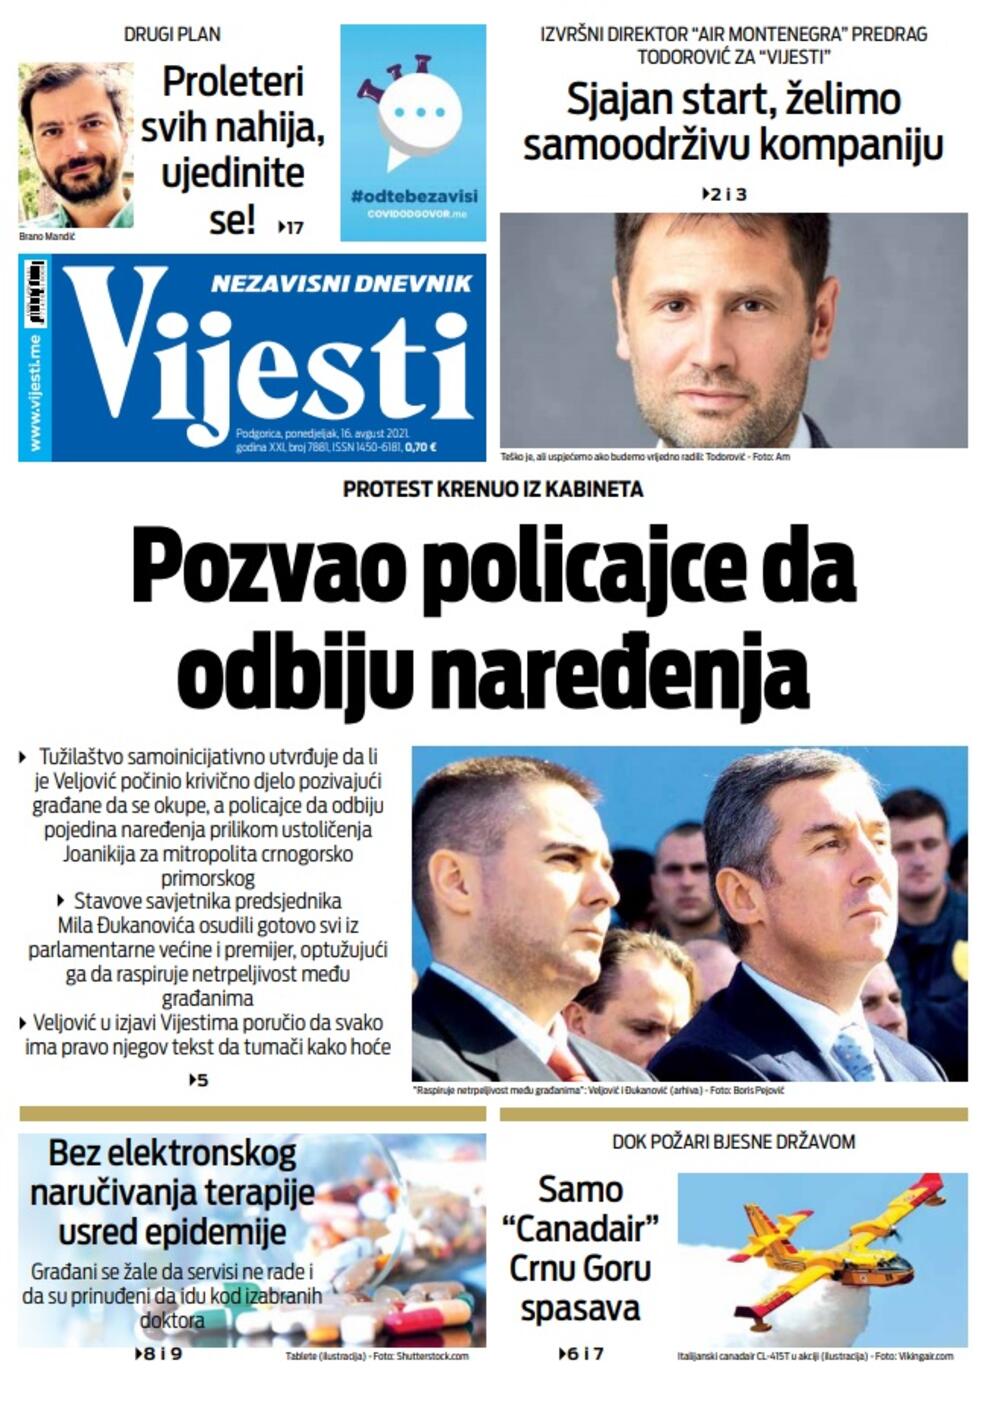 Naslovna strana "Vijesti" za ponedjeljak 16. avgust 2021. godine, Foto: Vijesti